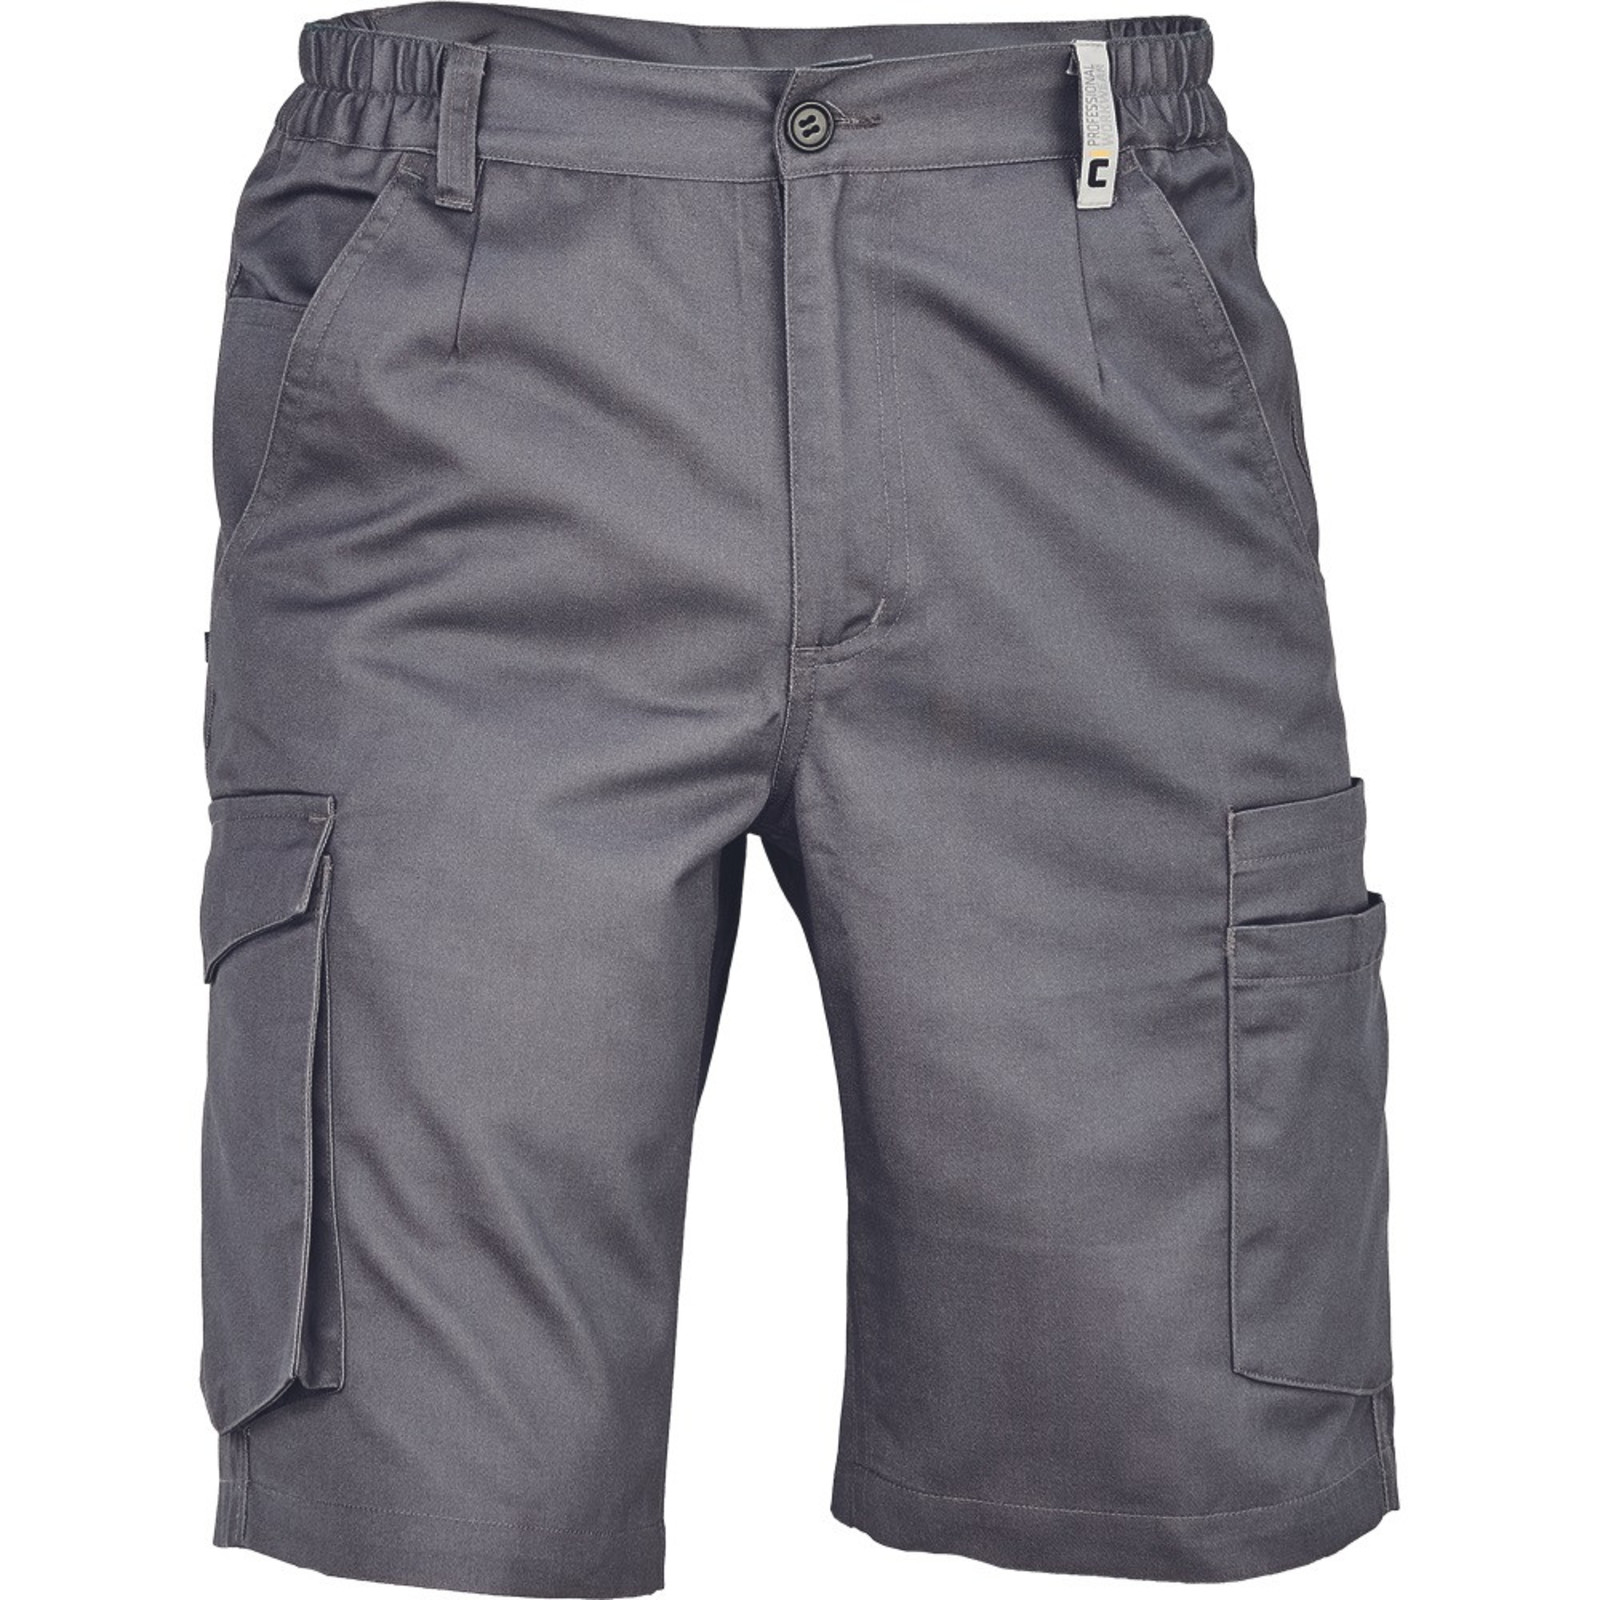 Pánske pracovné šortky Cerva Ciudades Basic Gijon - veľkosť: 54, farba: sivá